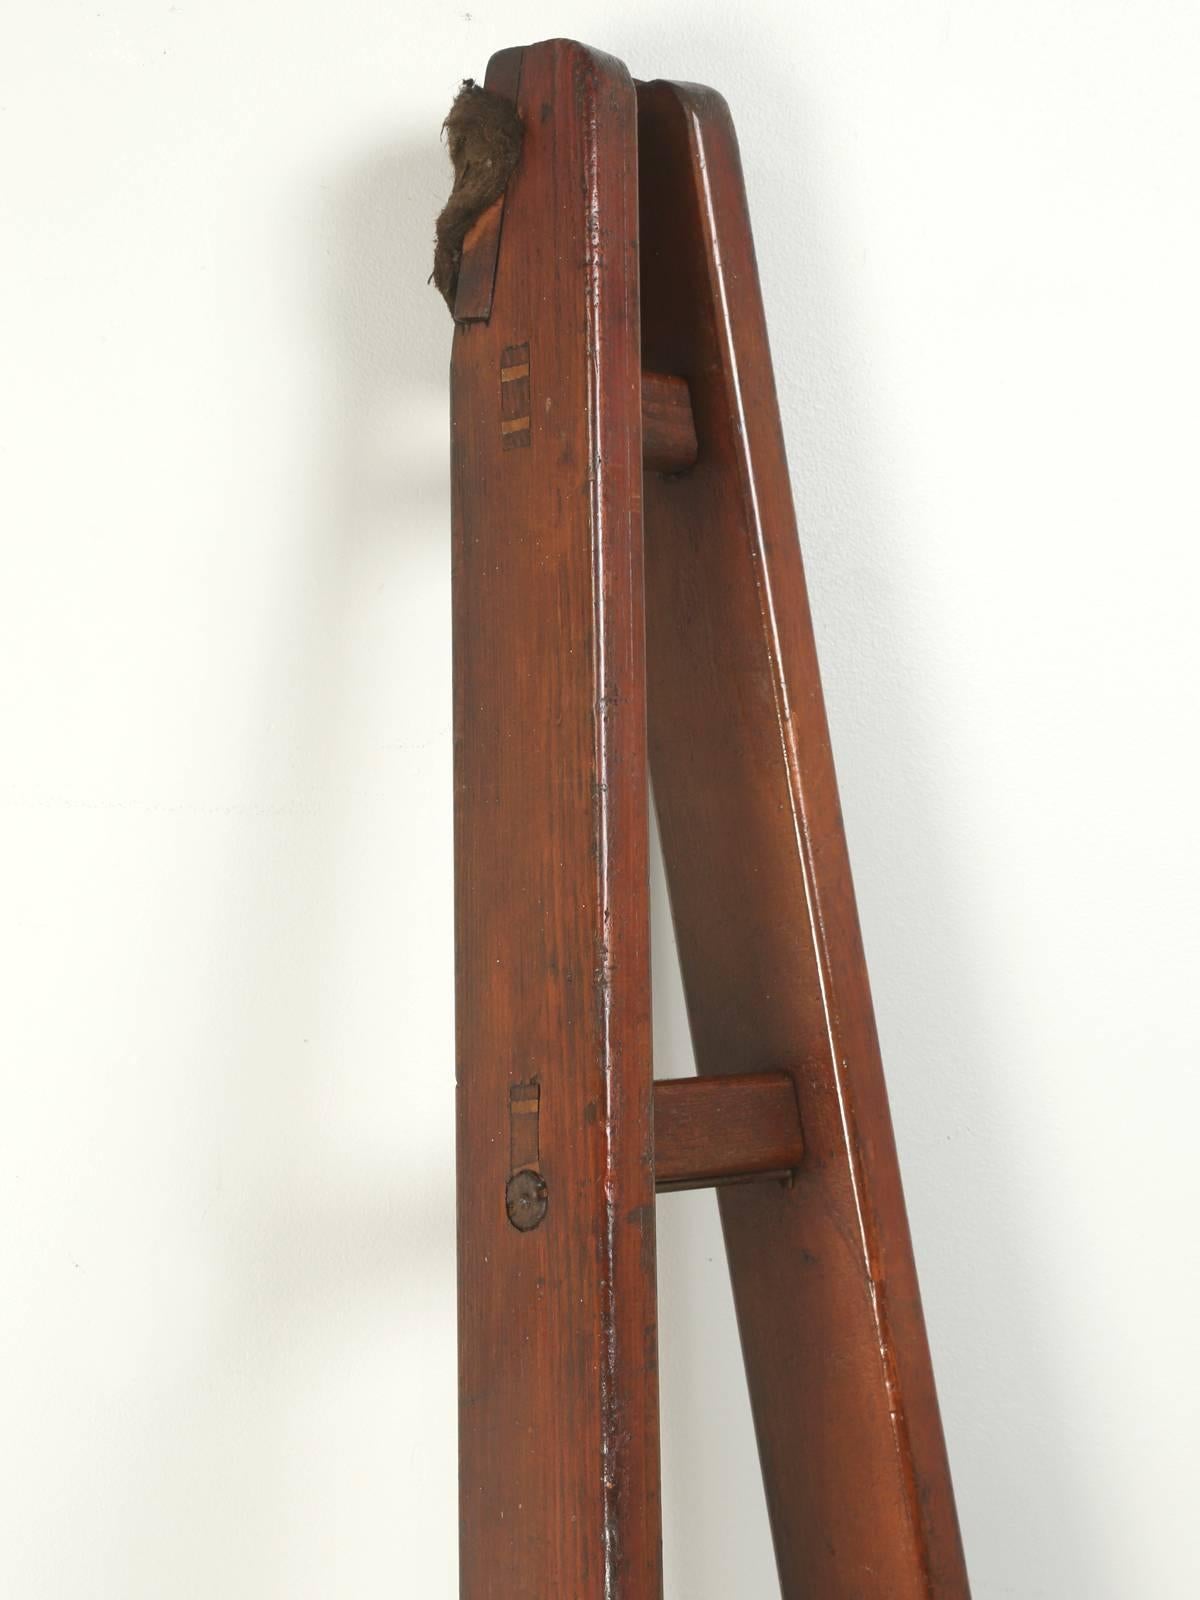 vintage orchard ladder